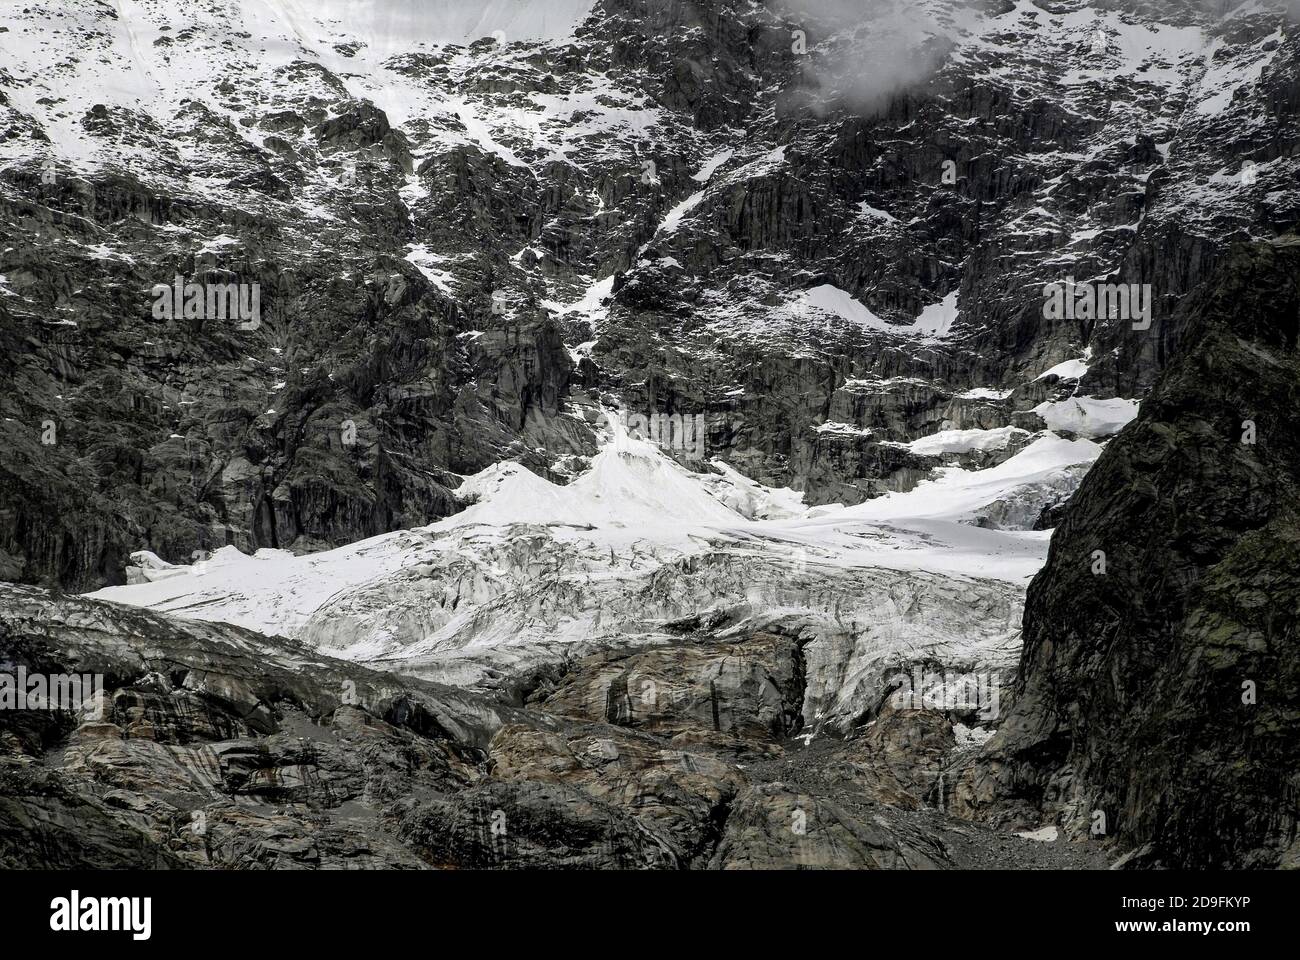 Im August, Monate vor dem Beginn des alpinen Winters, stürzt Schmelzwasser in den gestreift Felsen unter den Höhenschneefeldern und am Ende der Gletscher, die die zerklüfteten Hänge des Mont Blanc / Monte Bianco-Massivs hinunterschnappen, in Kanäle und Spalten. Aufnahme aus der Nähe von Entrèves, Courmayeur, Aostatal, Italien, in der Nähe des italienischen Eingangs zum 11.6 km (7.25 m) Mont-Blanc-Tunnel, der seit 1965 eine Alpenstraßenverbindung nach Frankreich bietet. Stockfoto